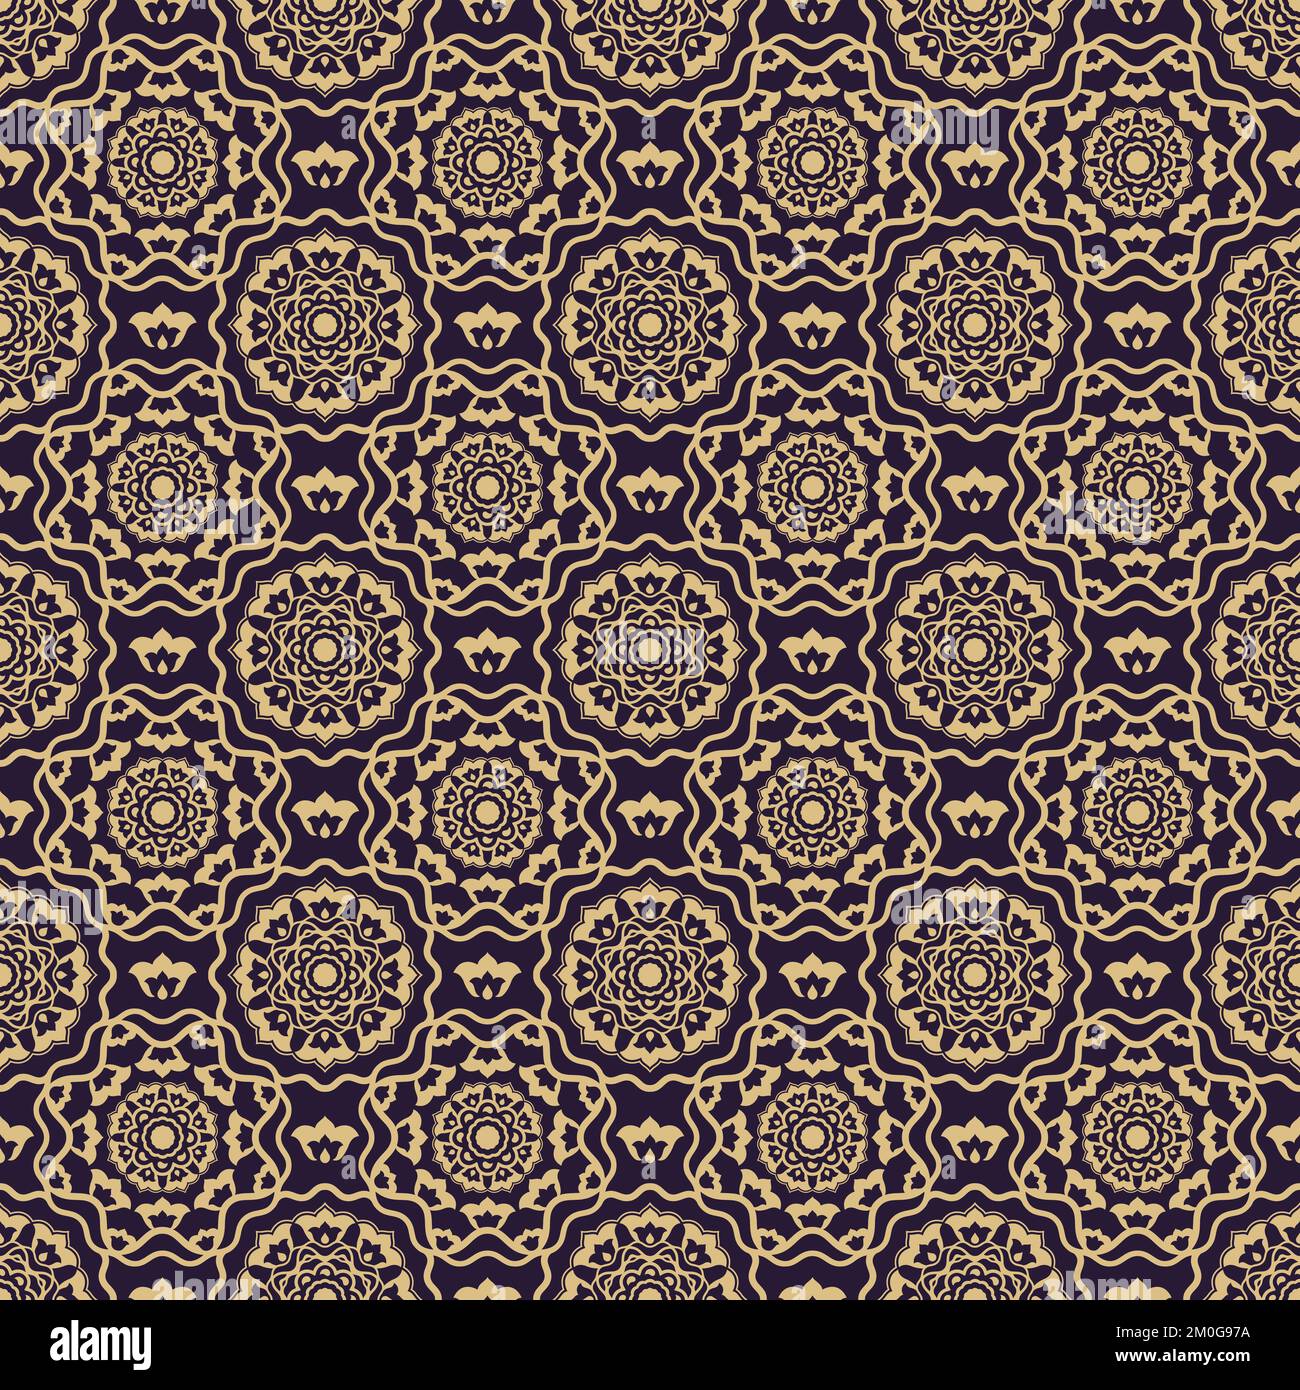 Motivo vettoriale medaglione ornamentale in stile ottomano kaftan. Da utilizzare per stampe in tessuto, tessitura, lavorazione a maglia, decorazione domestica, fash Illustrazione Vettoriale